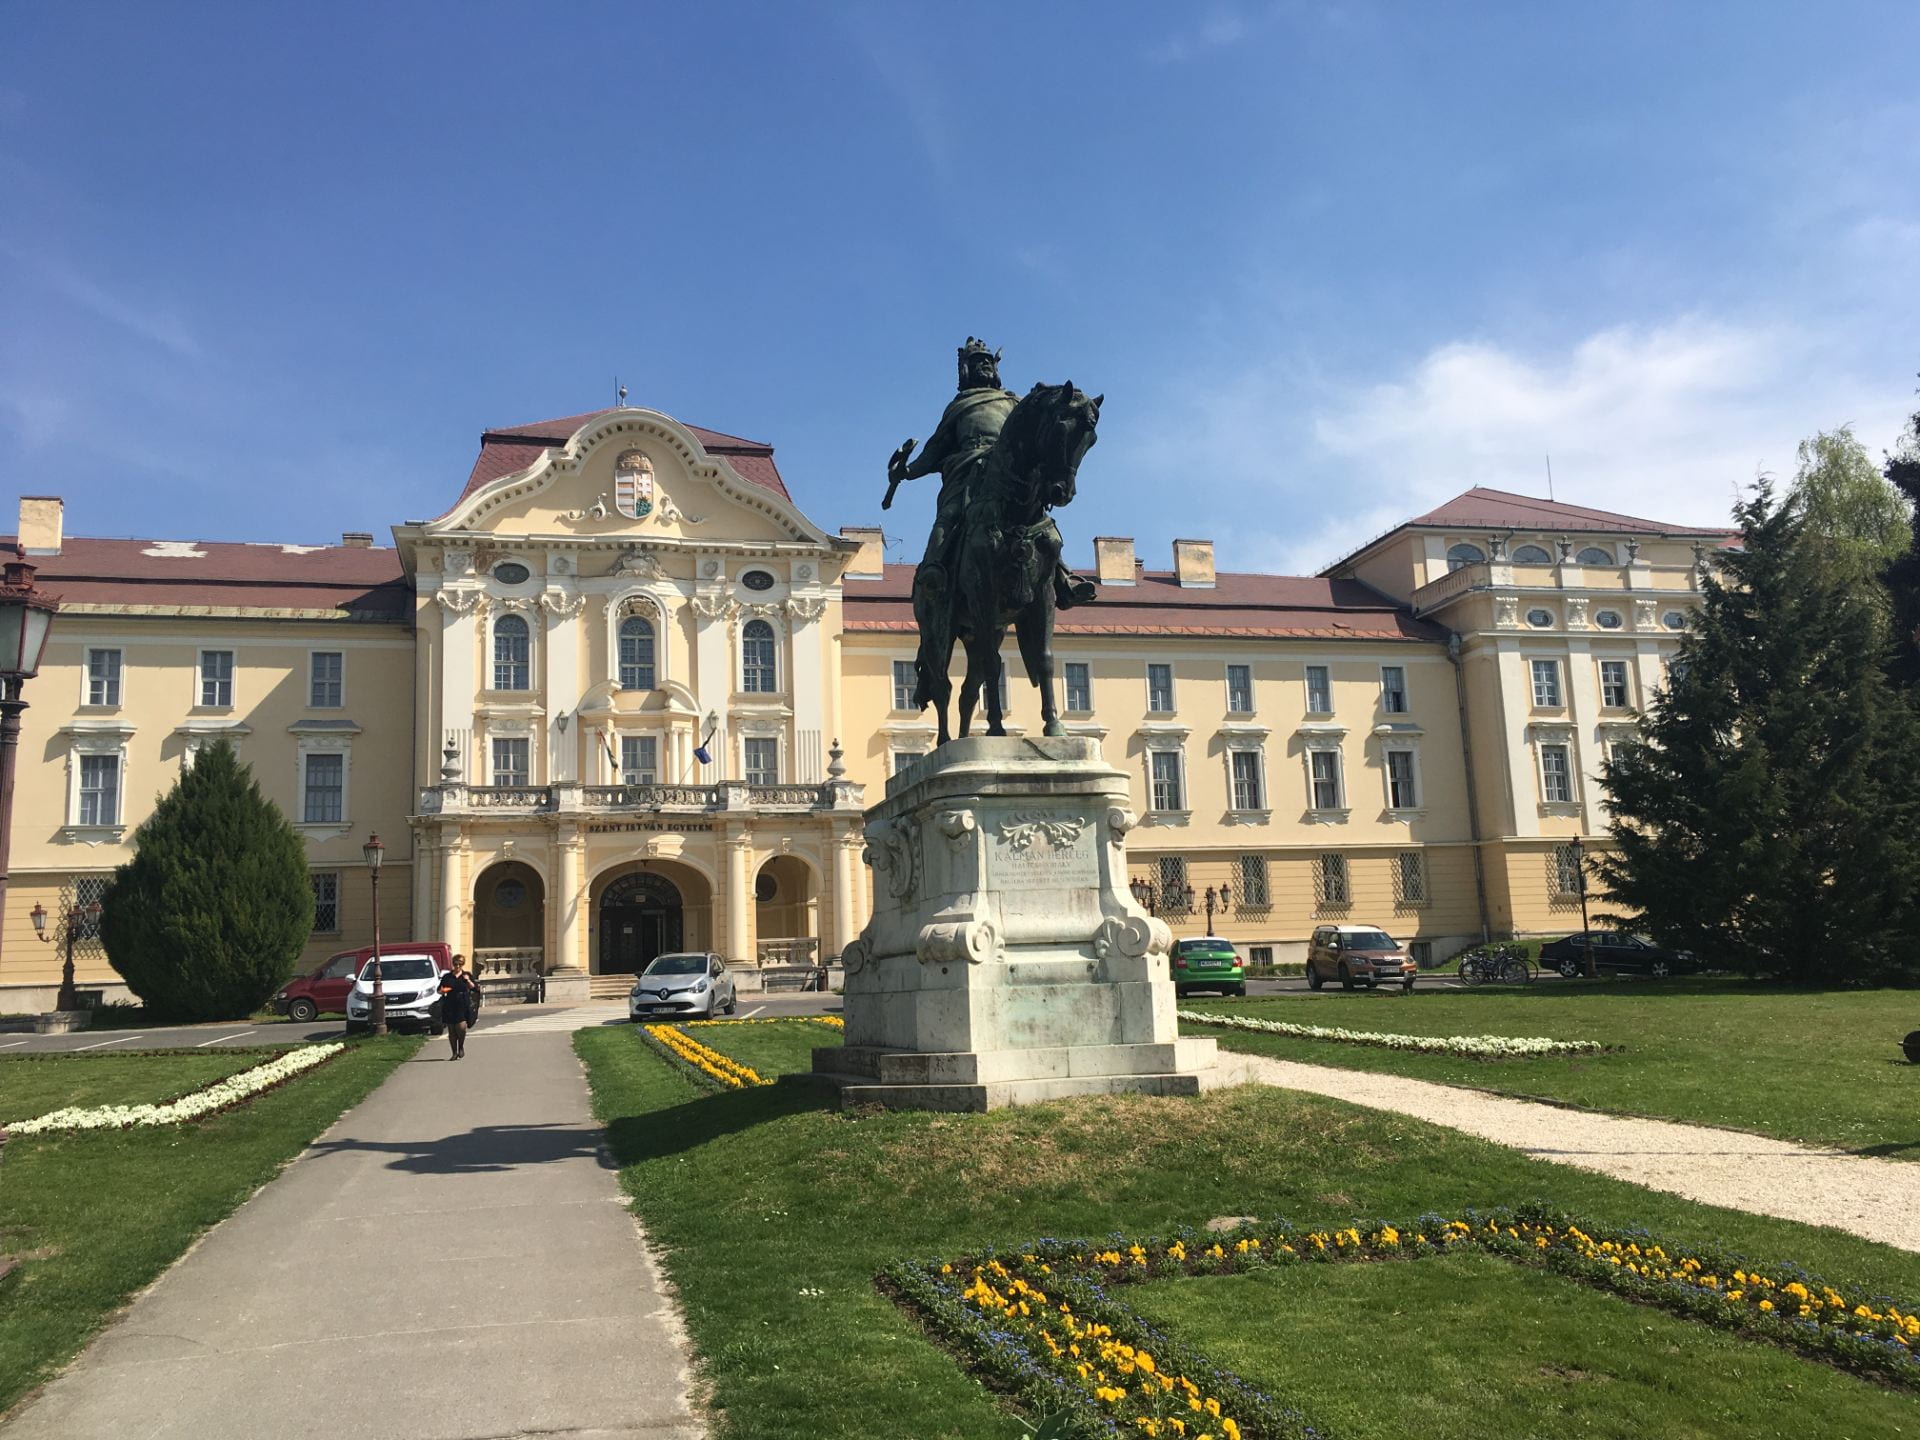 Szent Istvan University in Hungary